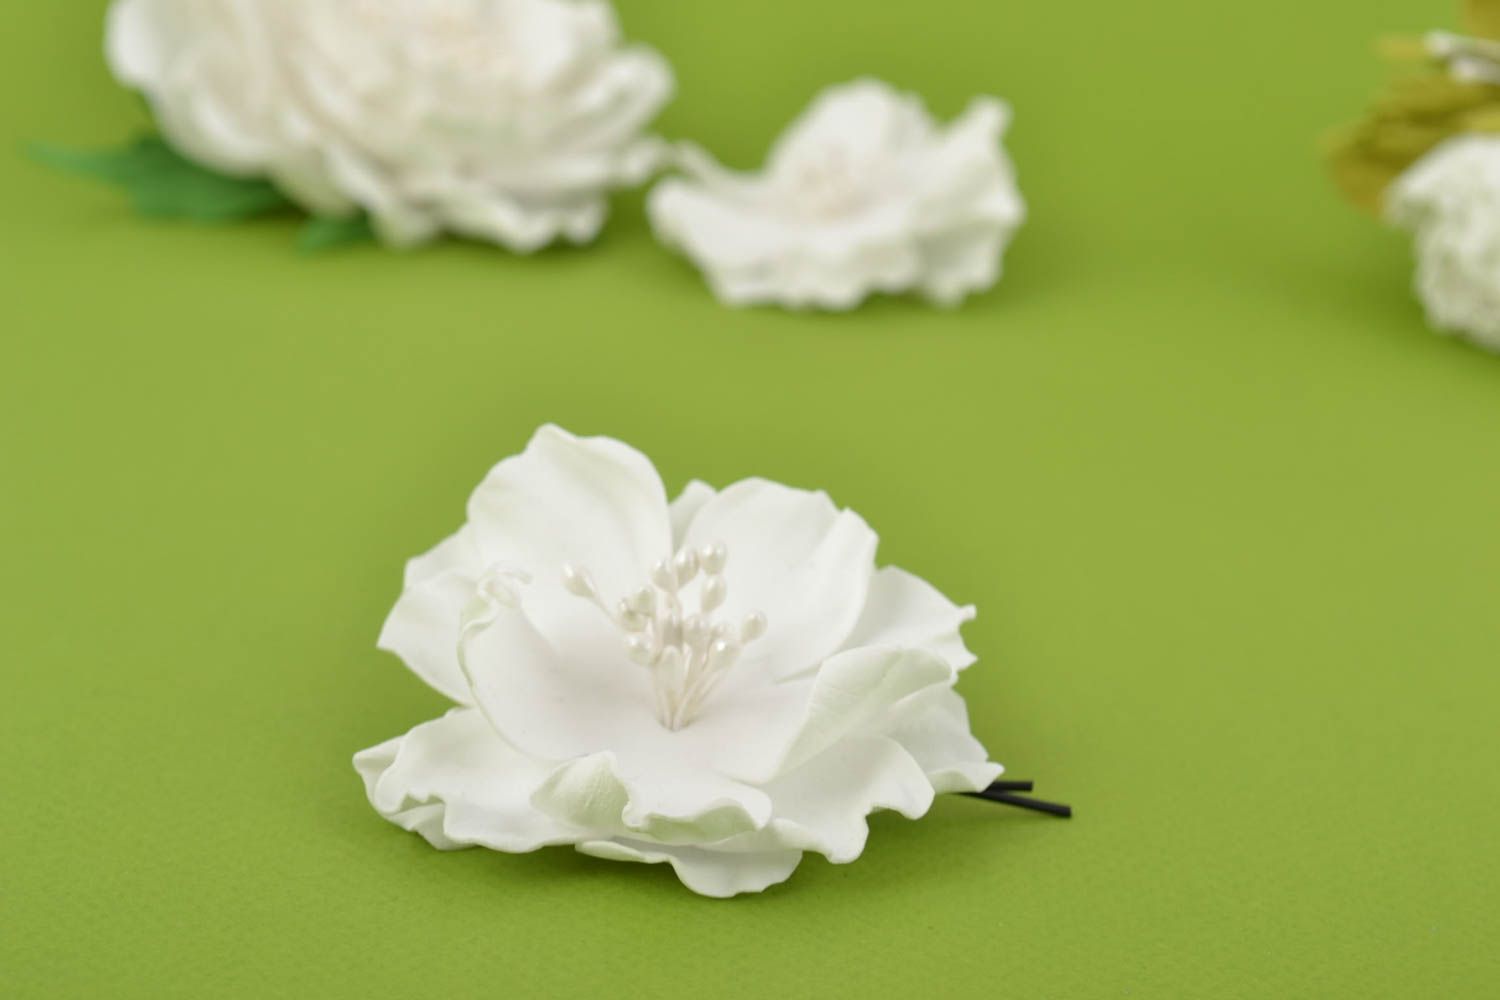 Заколка-невидимка с белым объемным цветком из фоамирана аксессуар ручной работы фото 1